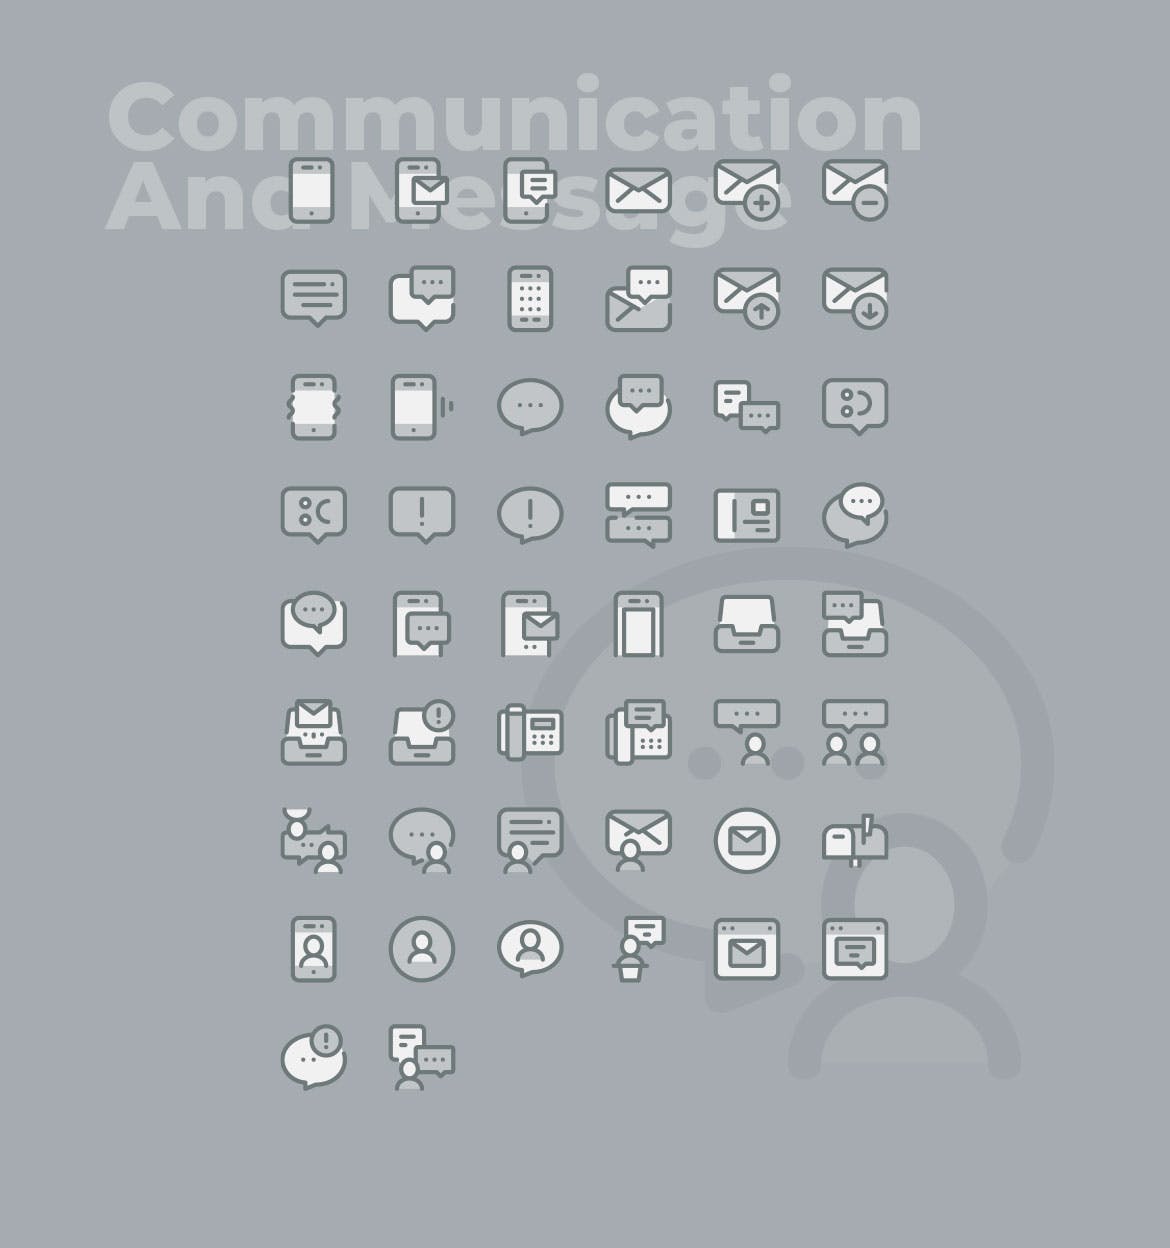 50枚社交通讯主题双色调矢量蚂蚁素材精选图标 50 Communication Icons  –  Two Tone Style插图(1)